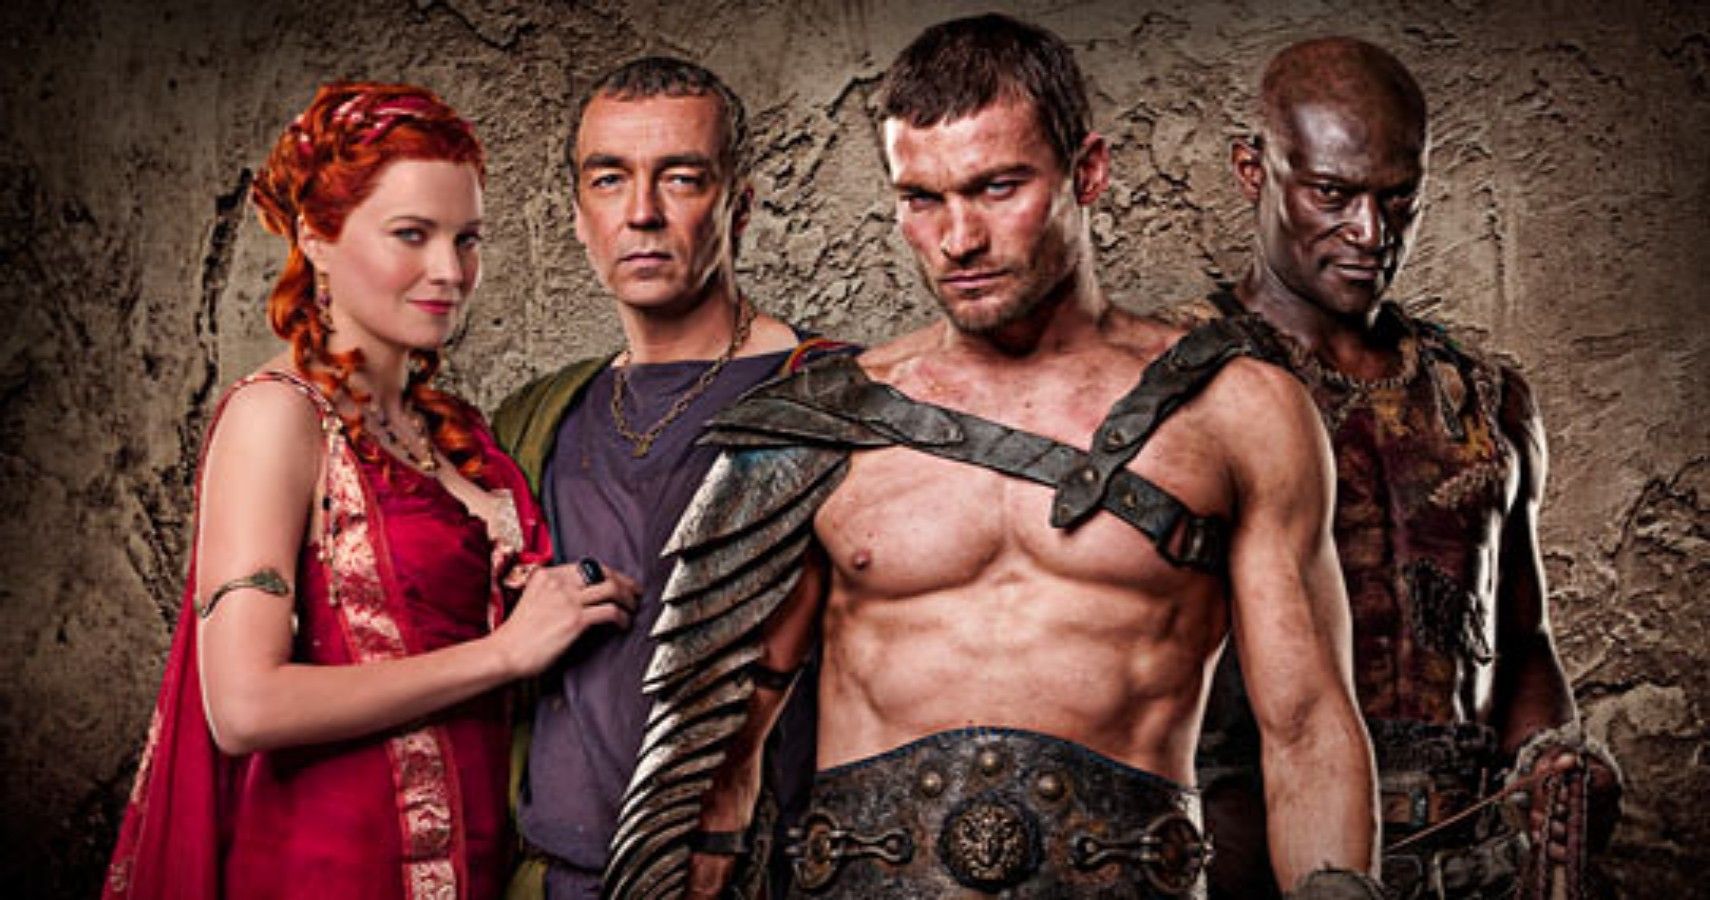 cast of spartacus